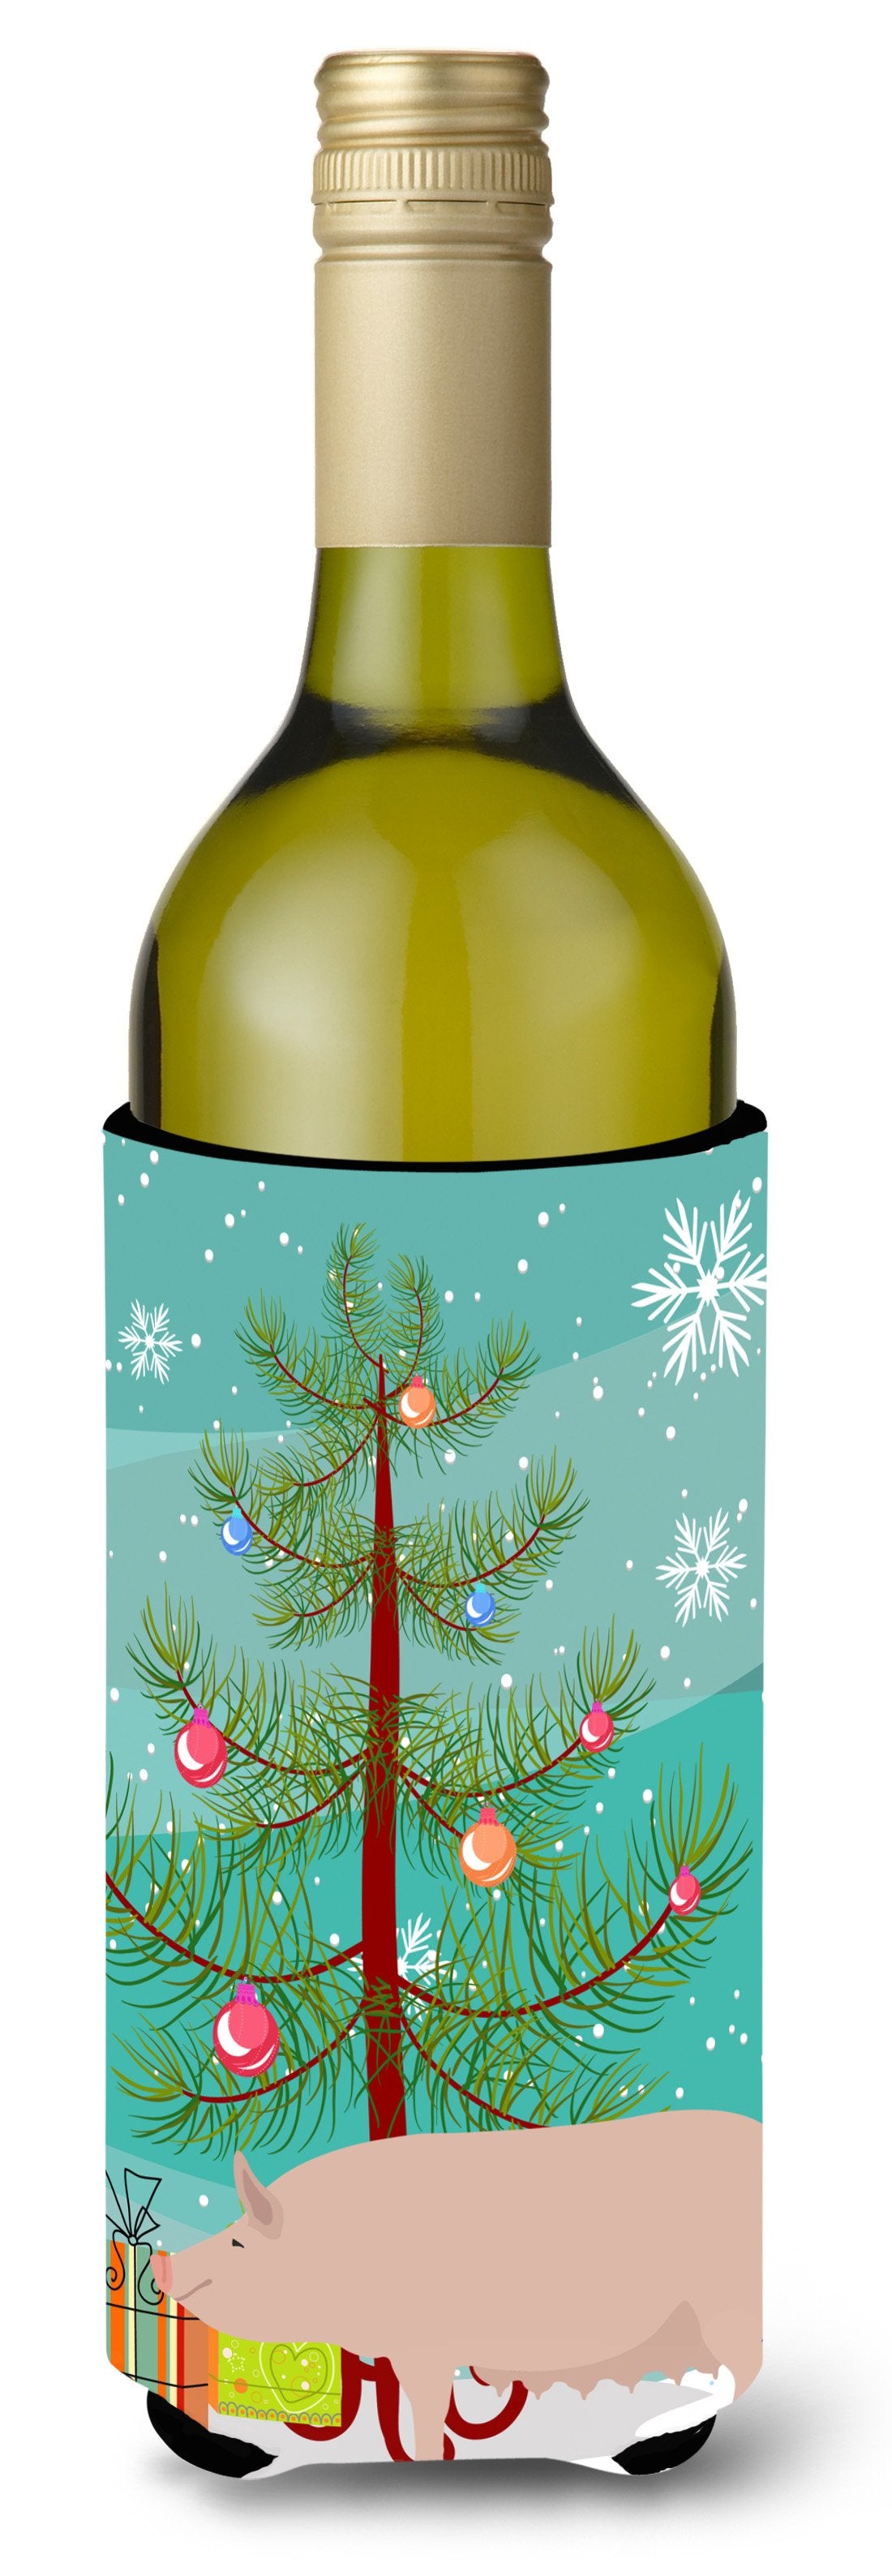 English Large White Pig Christmas Wine Bottle Beverge Insulator Hugger BB9305LITERK by Caroline's Treasures